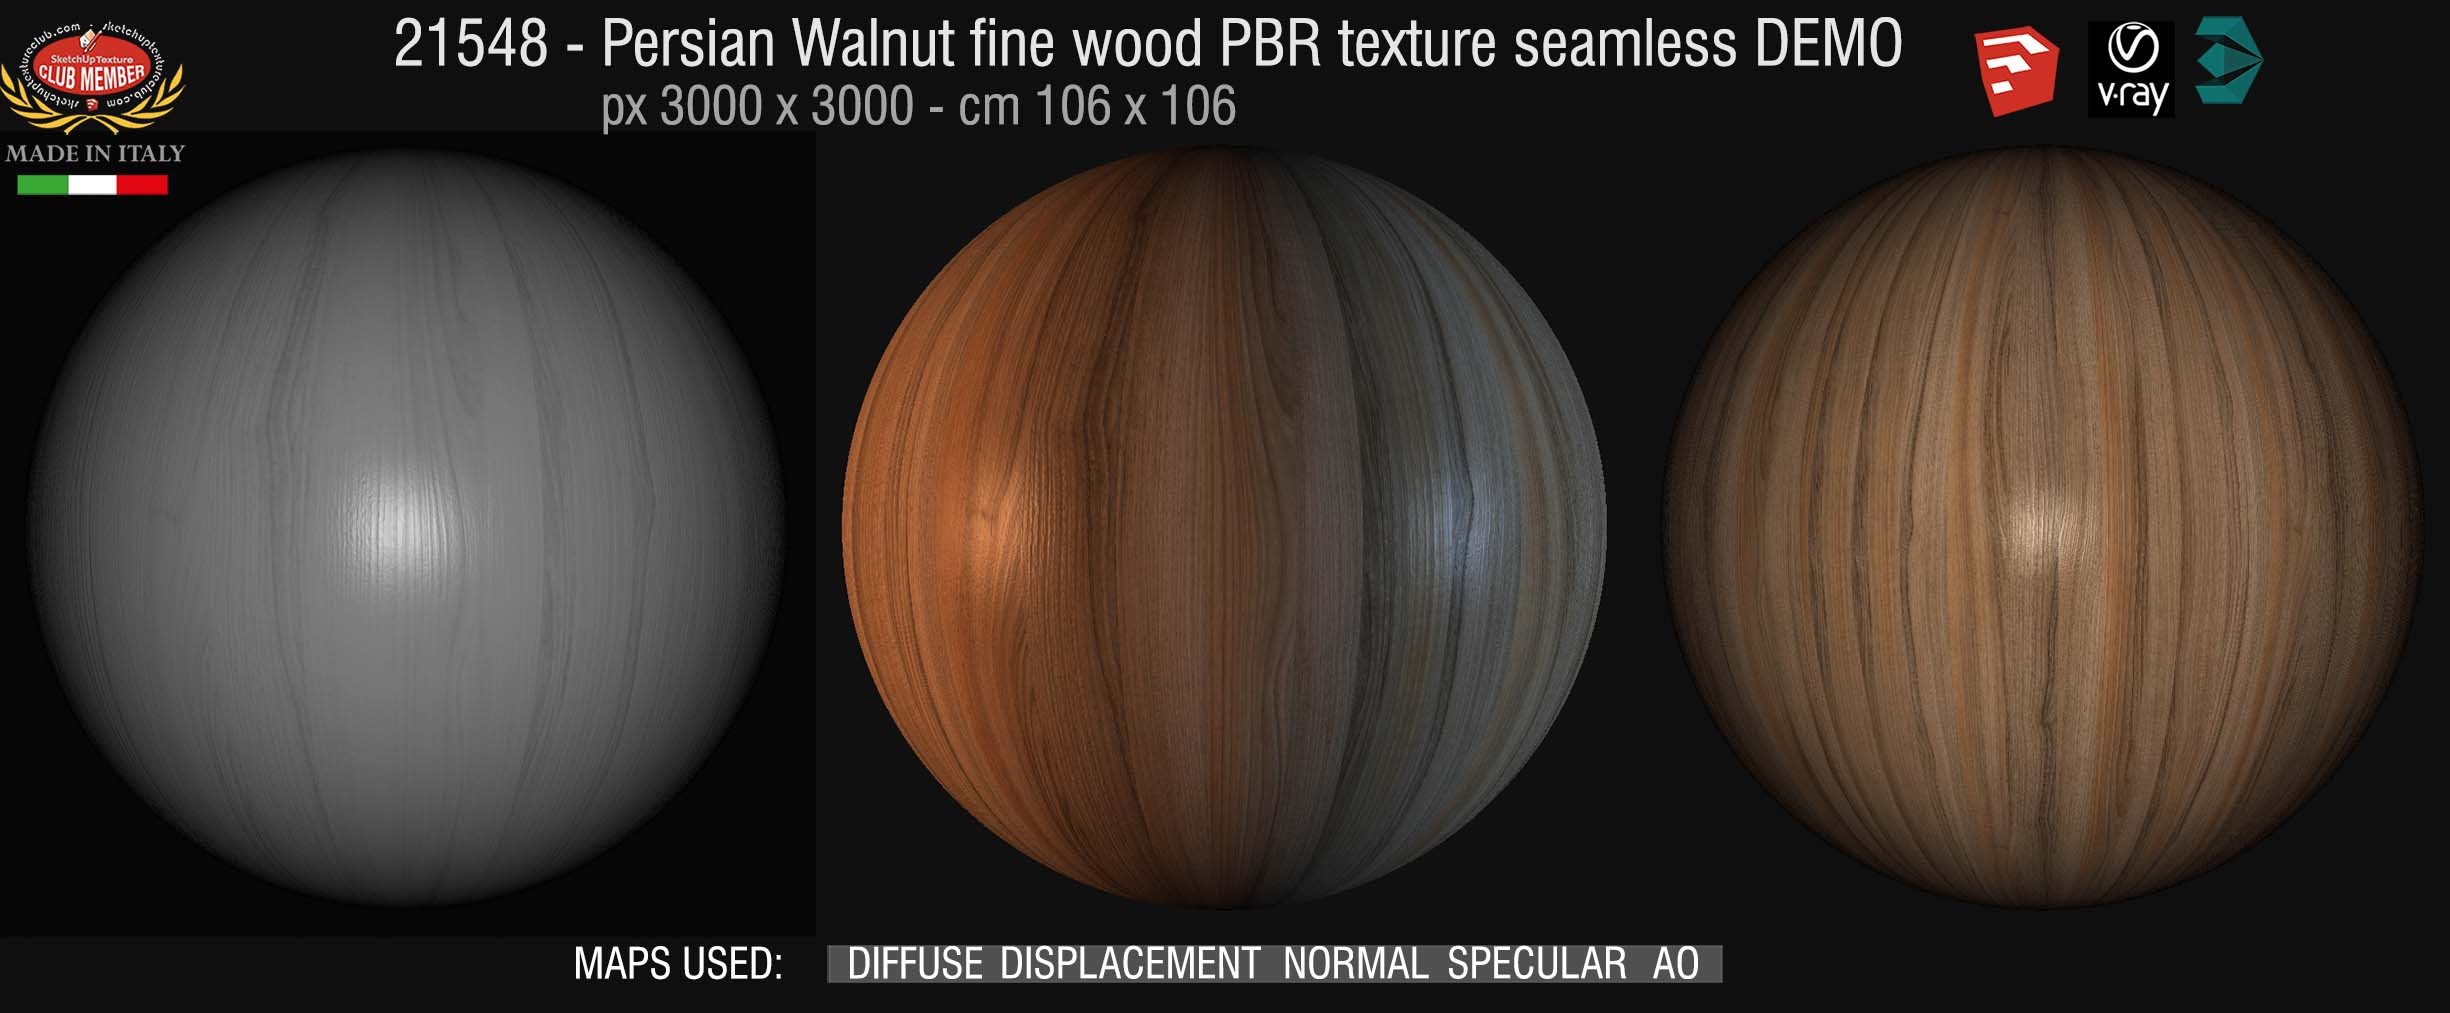 21548 Persian walnut PBR texture seamless DEMO